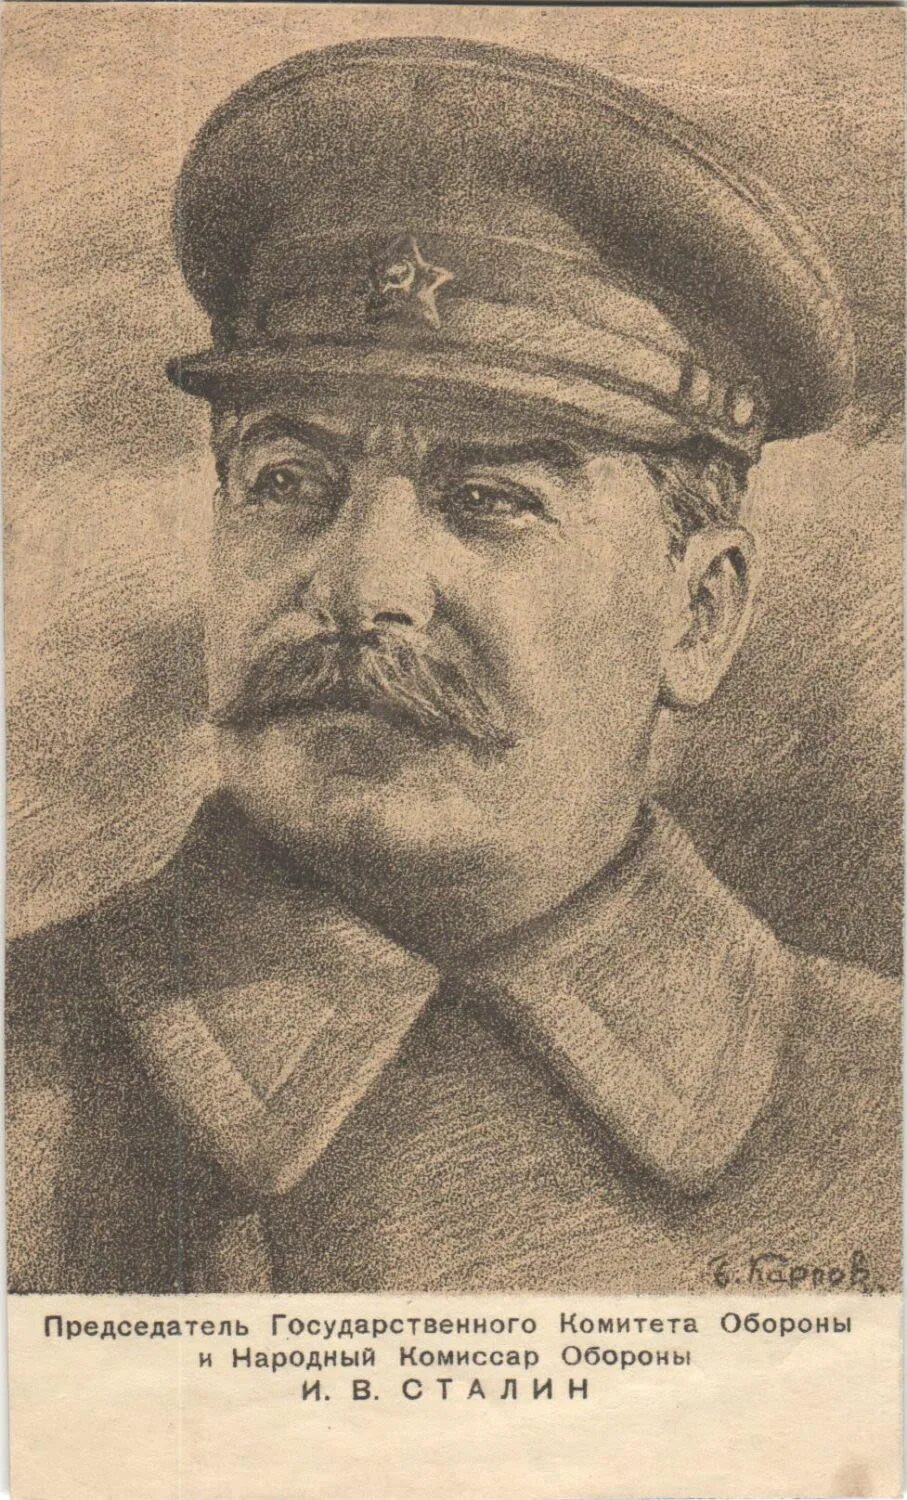 Сталин в 1944 году. Сталин. Сталин народный комиссар. Сталин 1944 год. Открытки с изображением Сталина.